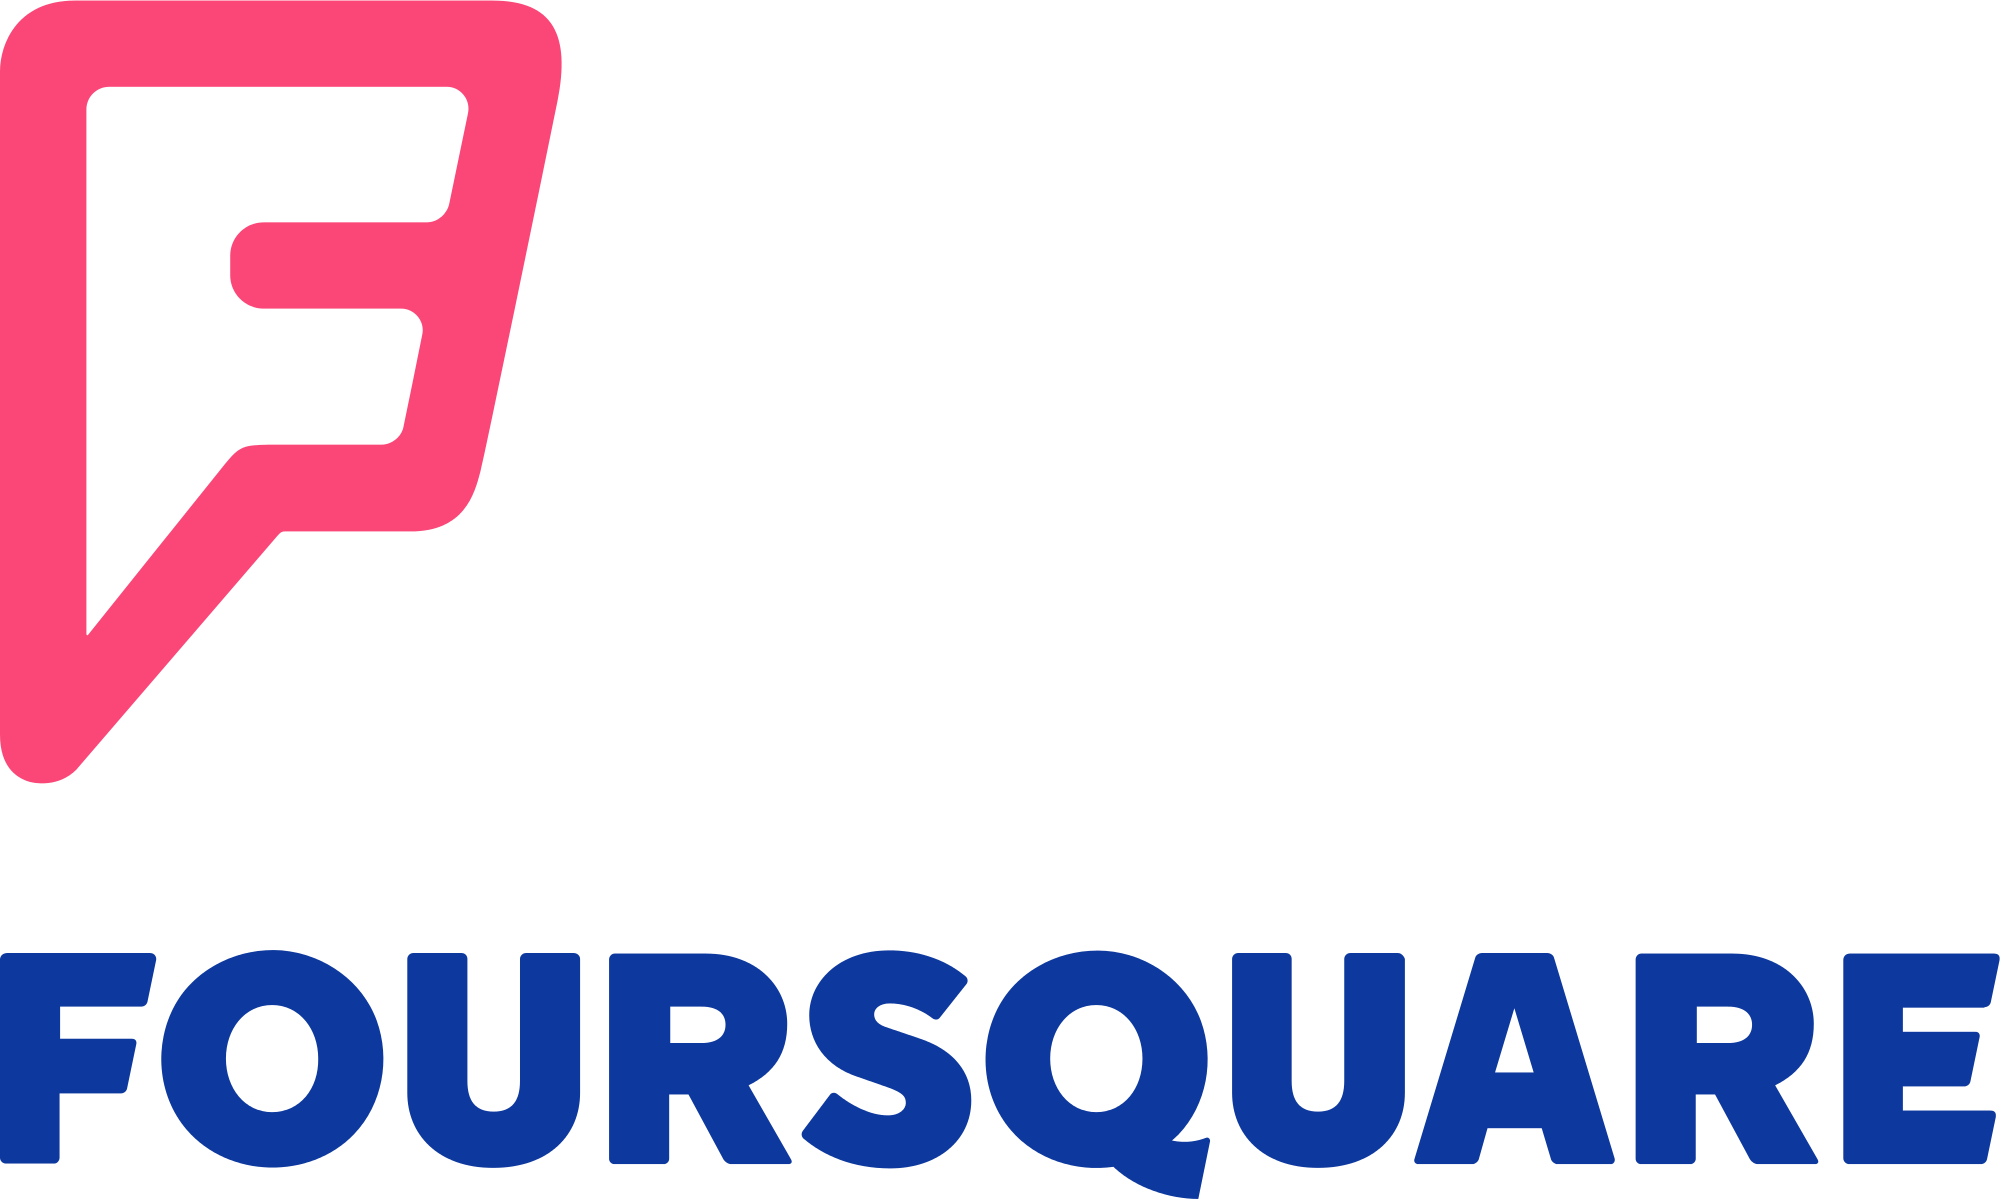 Foursquare Logo - File:Foursquare logo.svg - Wikimedia Commons